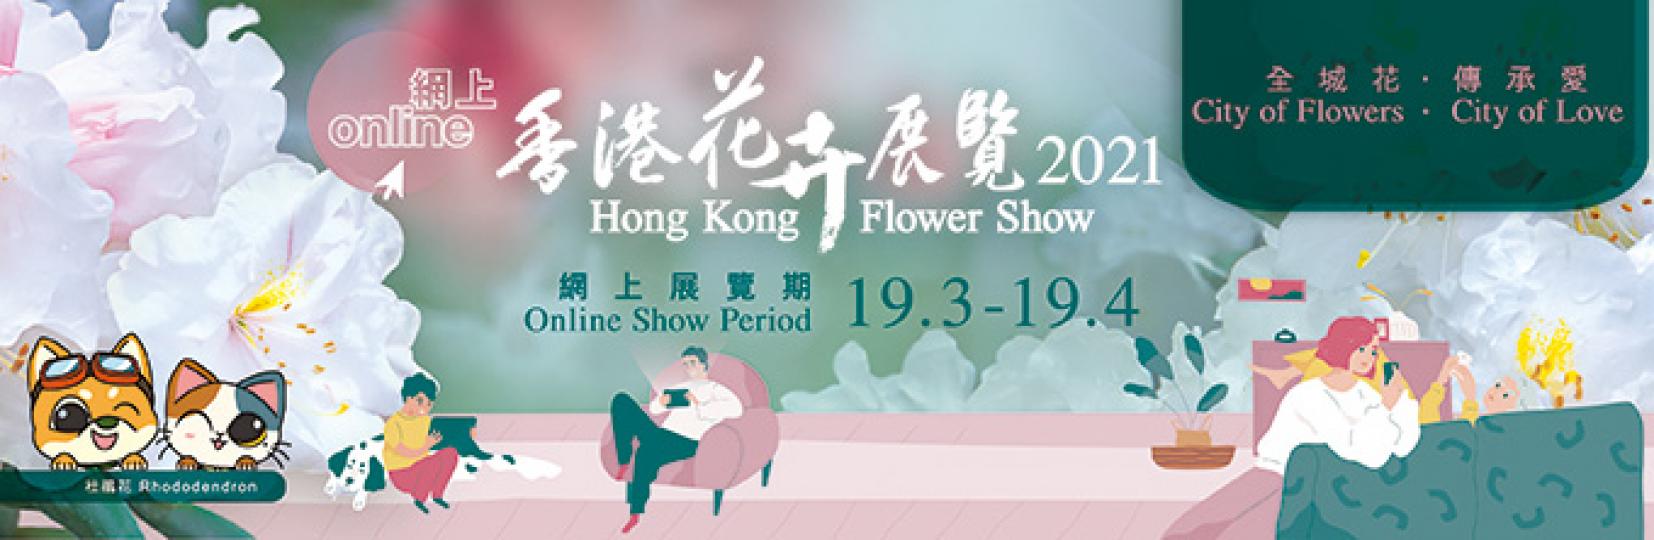 網上香港花卉展覽以杜鵑花為主題花